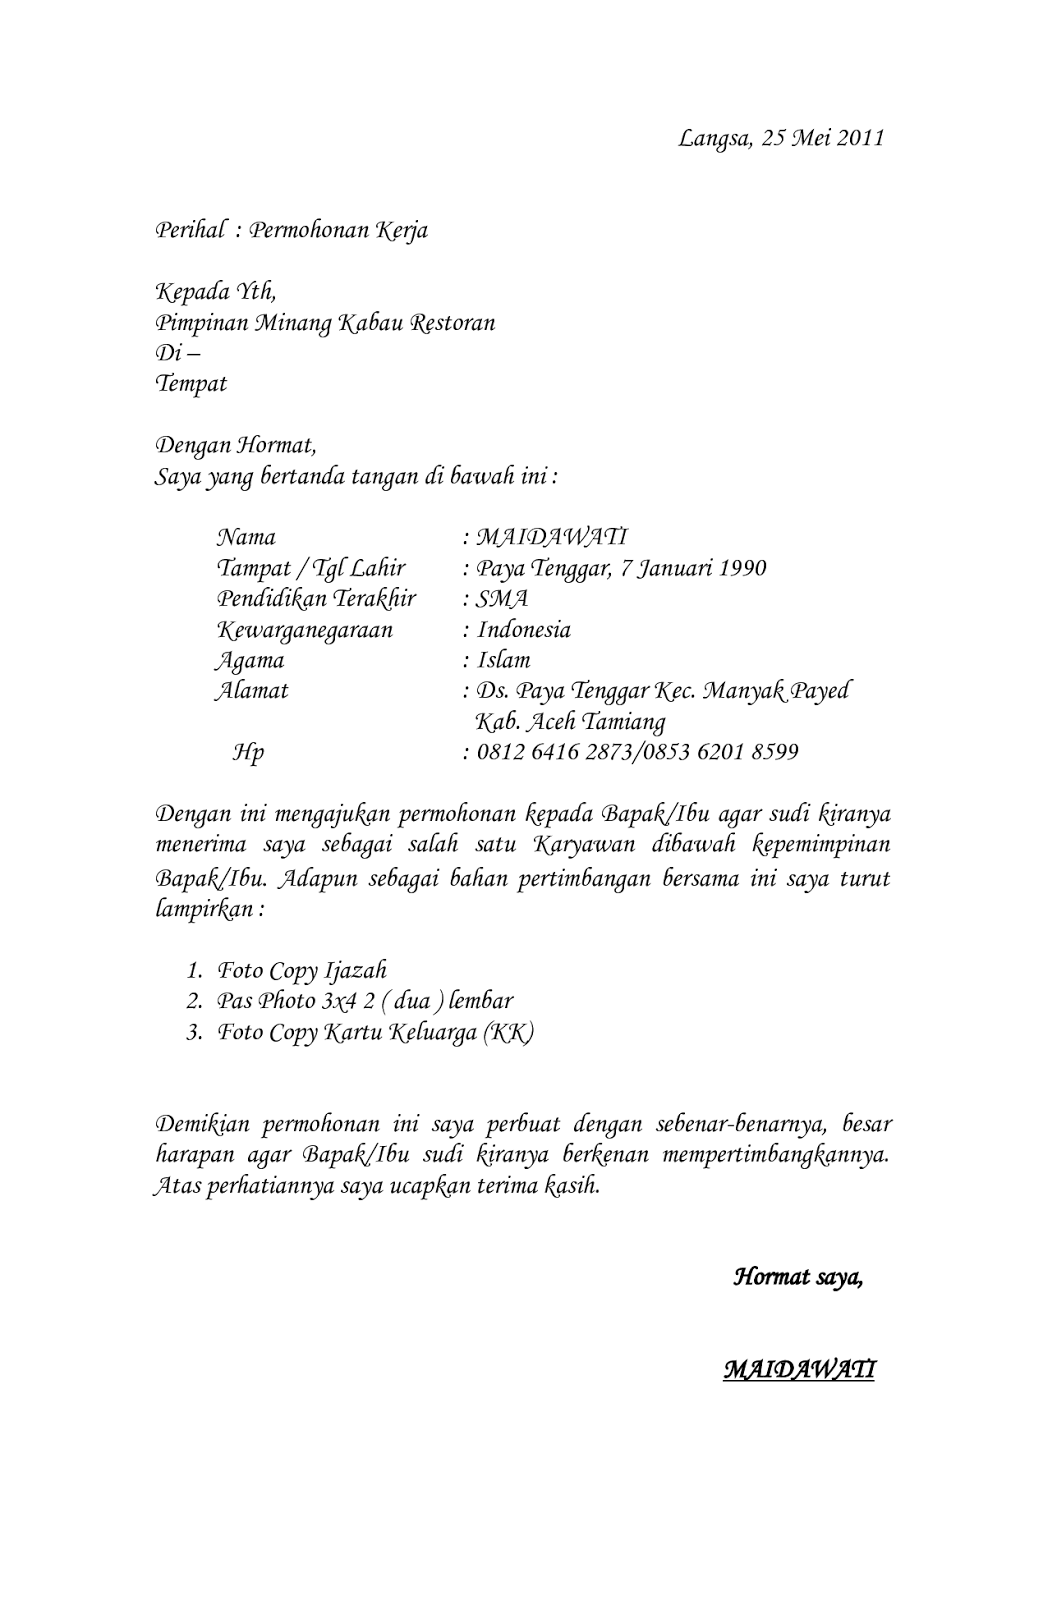 Download Contoh Surat Lamaran Kerja Di Rumah Makan Padang News - Hutomo